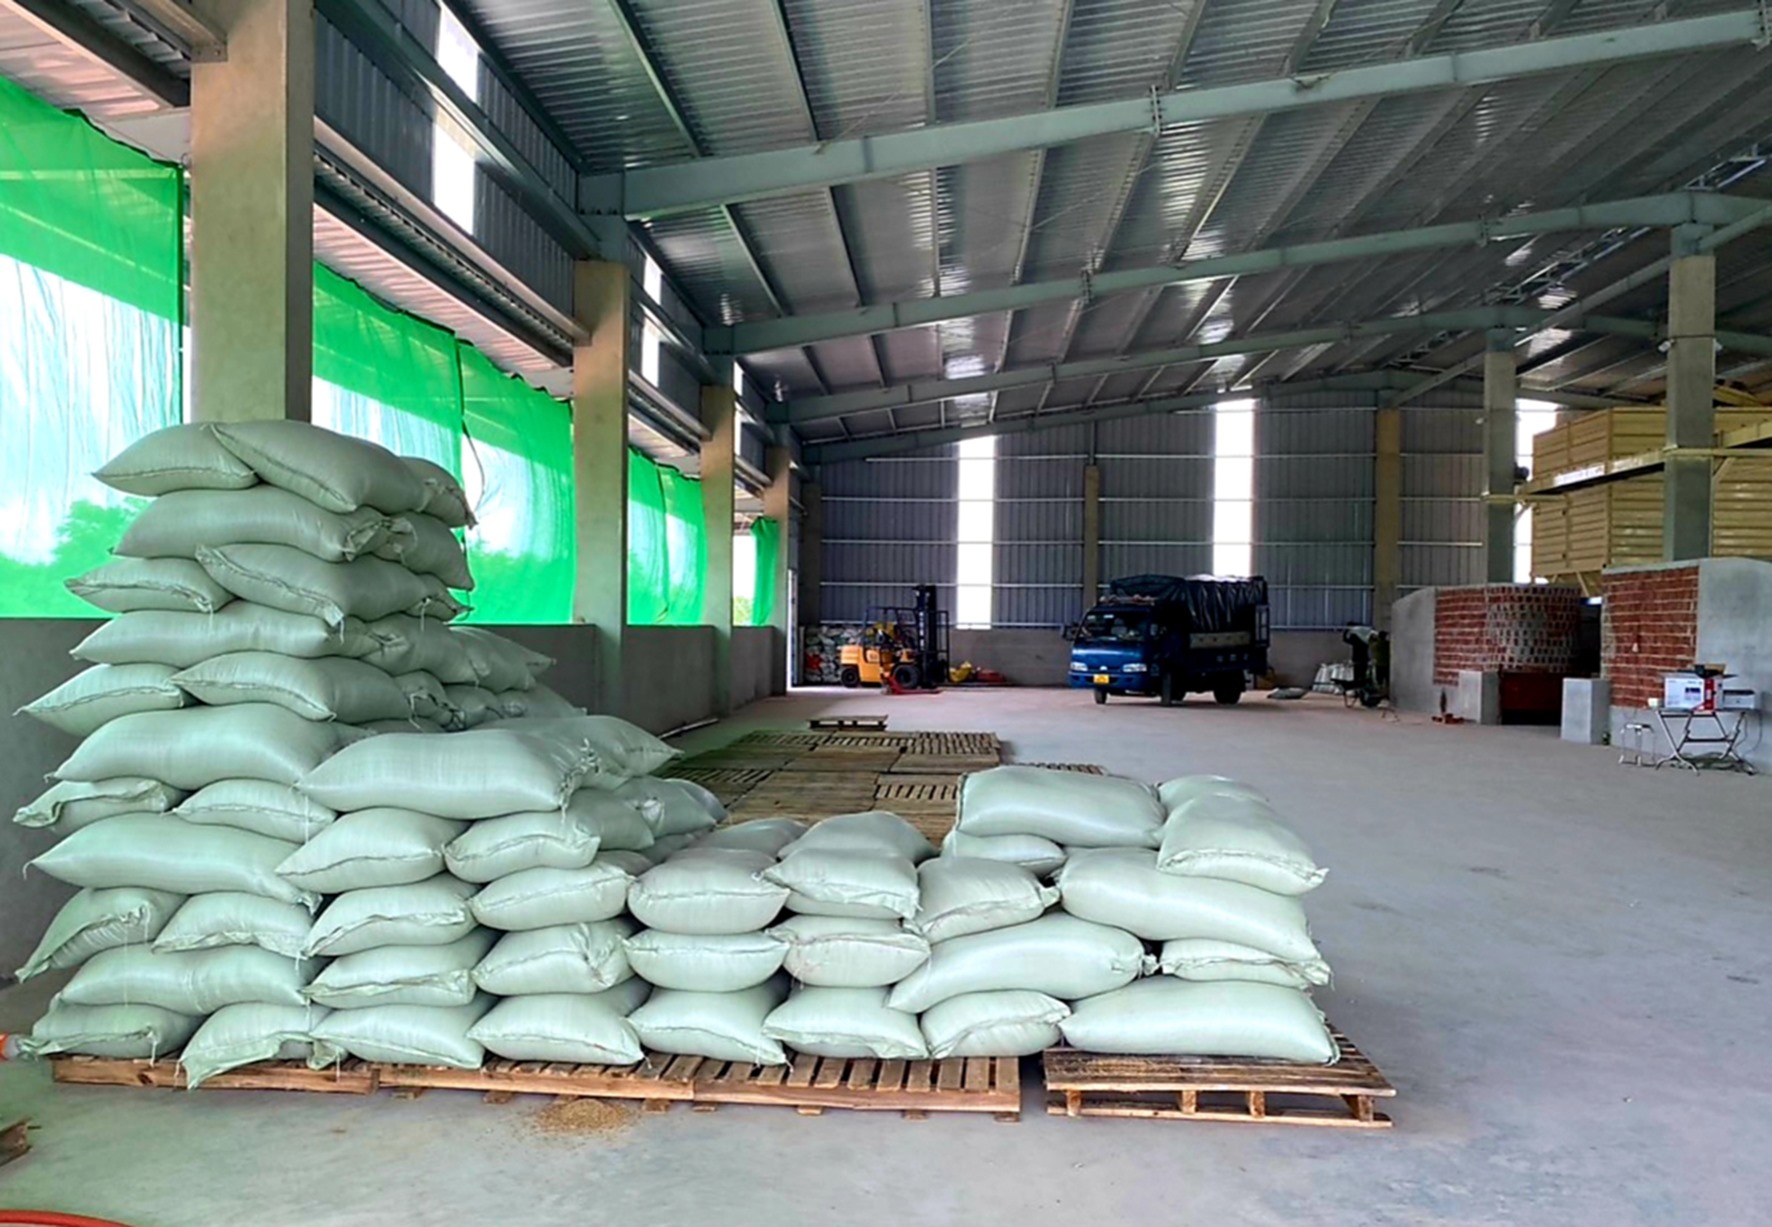 Lúa của người dân ở huyện Hải Lăng vừa được sấy khô - Ảnh: Tú Linh